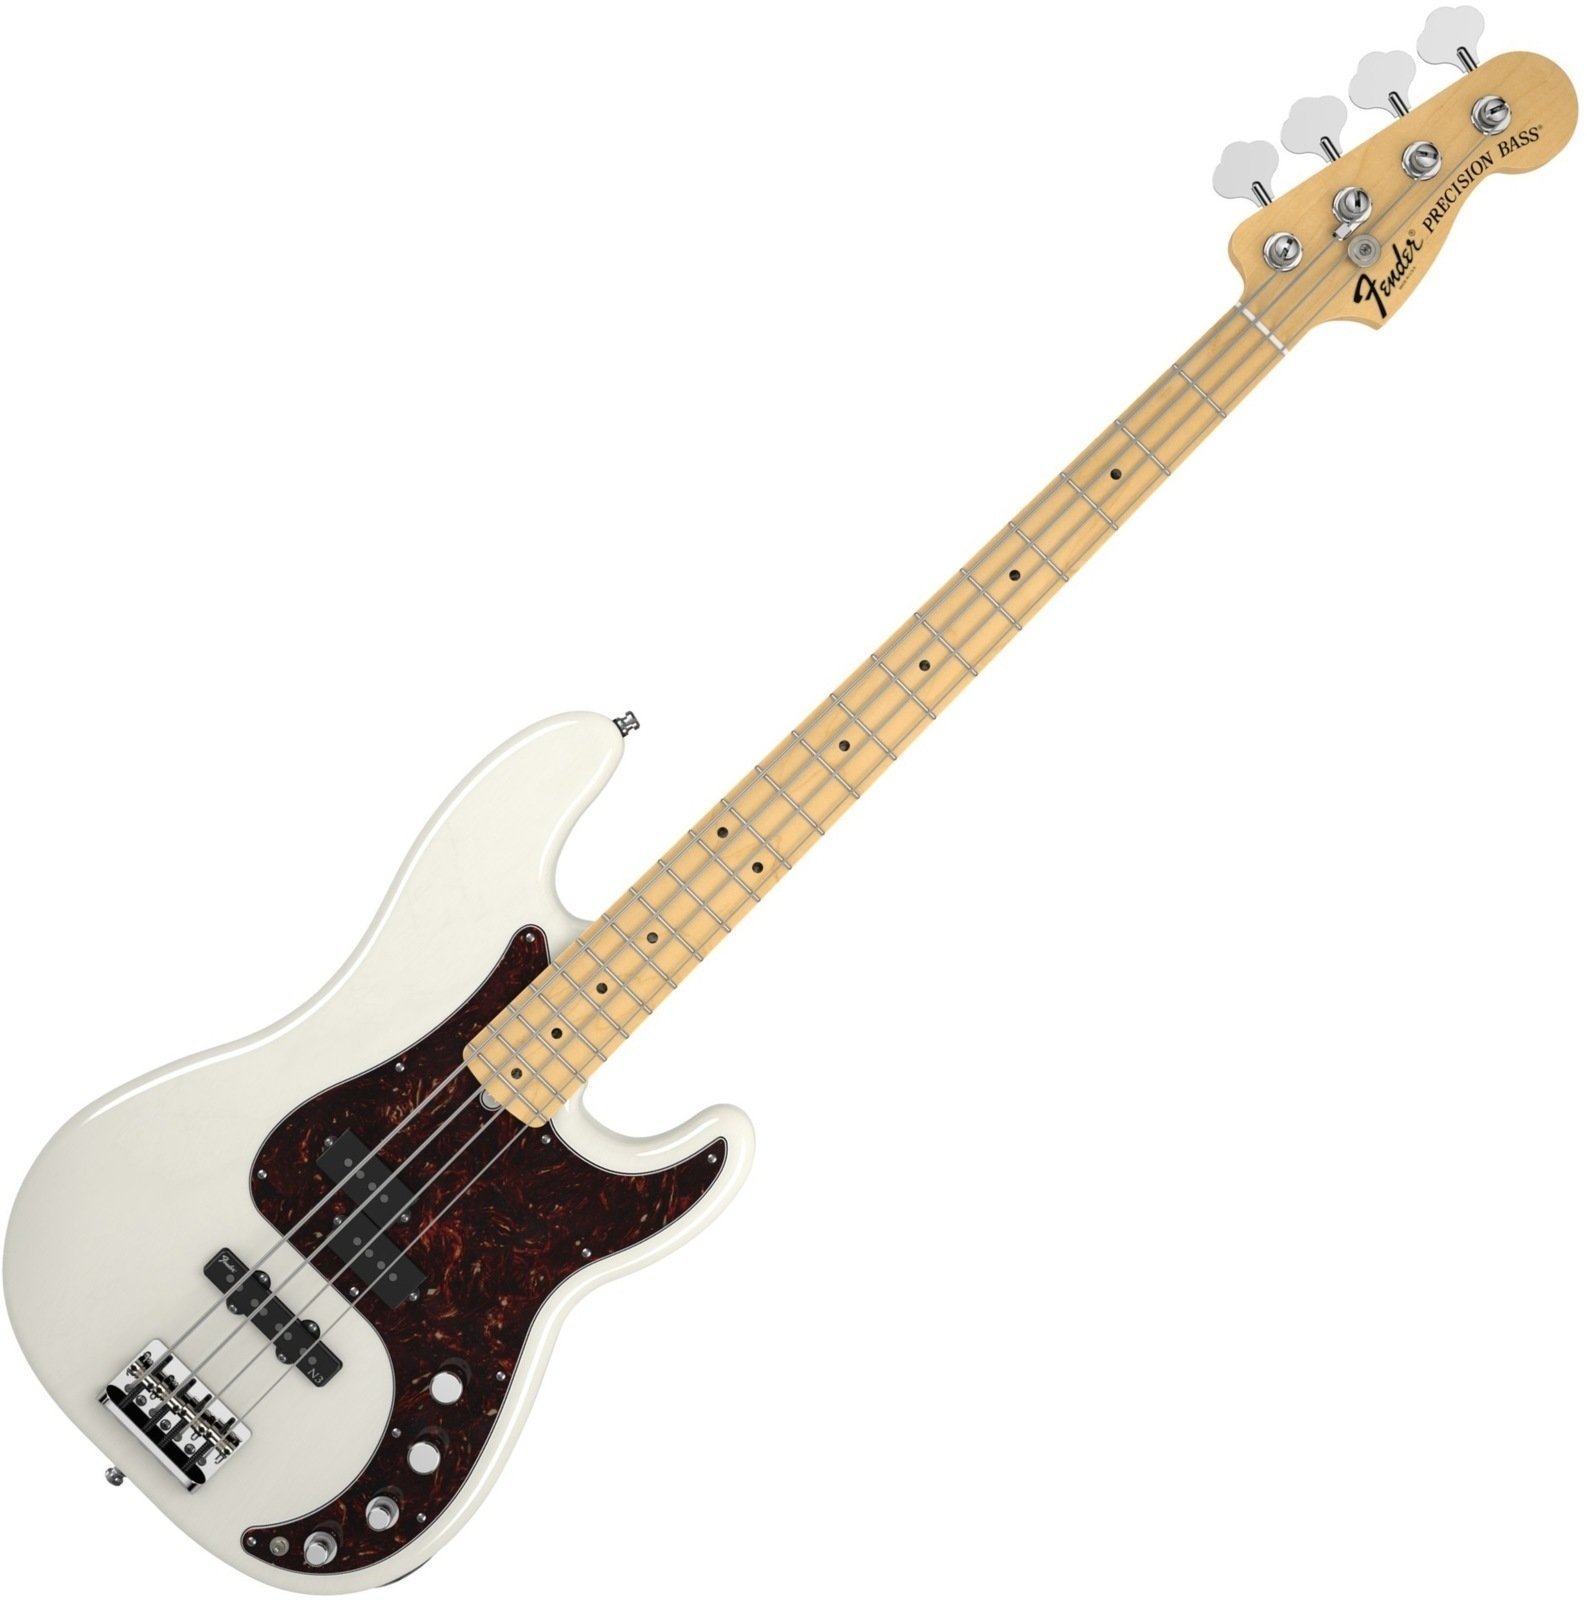 Basse électrique Fender American Deluxe Precision Bass Ash, Maple Fingerboard, White Blonde